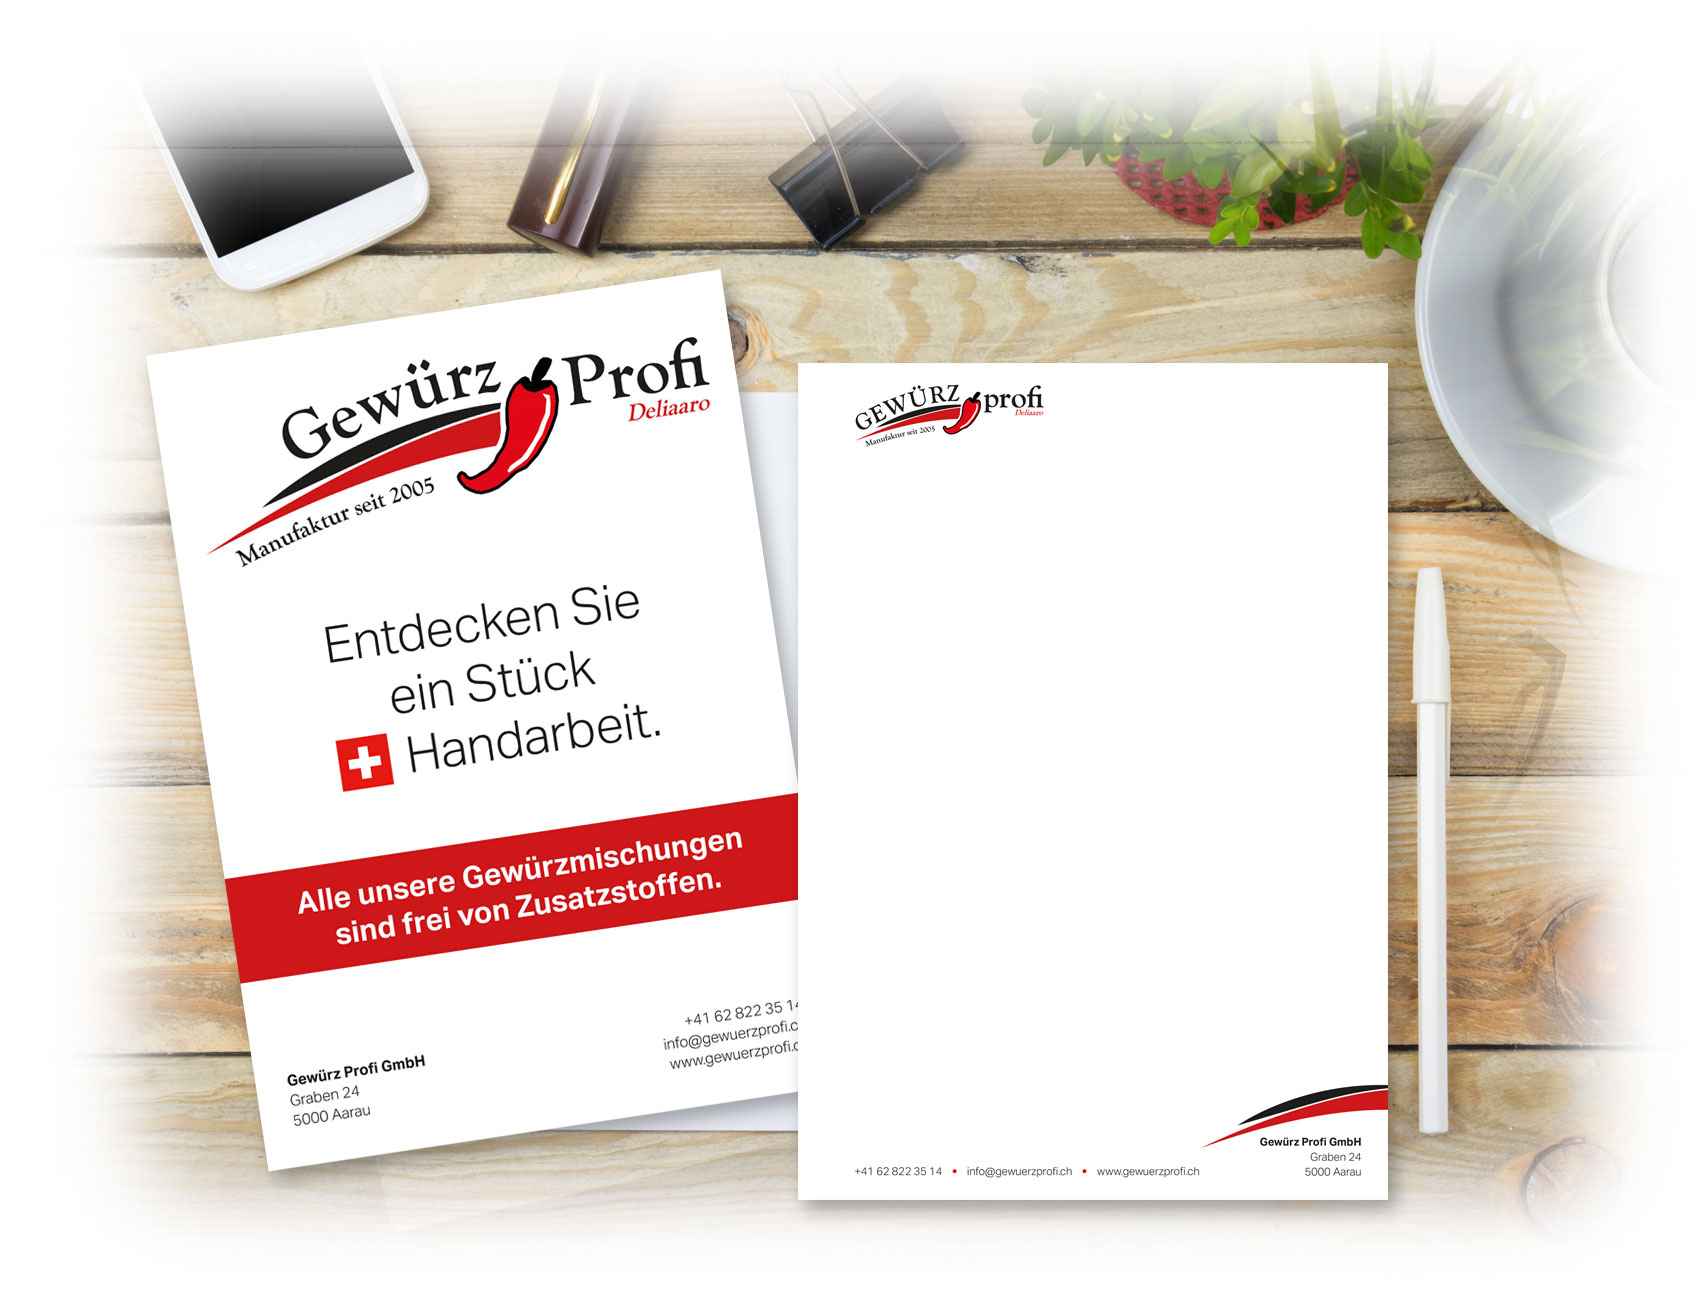 Gewürz Profi GmbH Aarau - Neugestaltung diverse Drucksachen und Logo